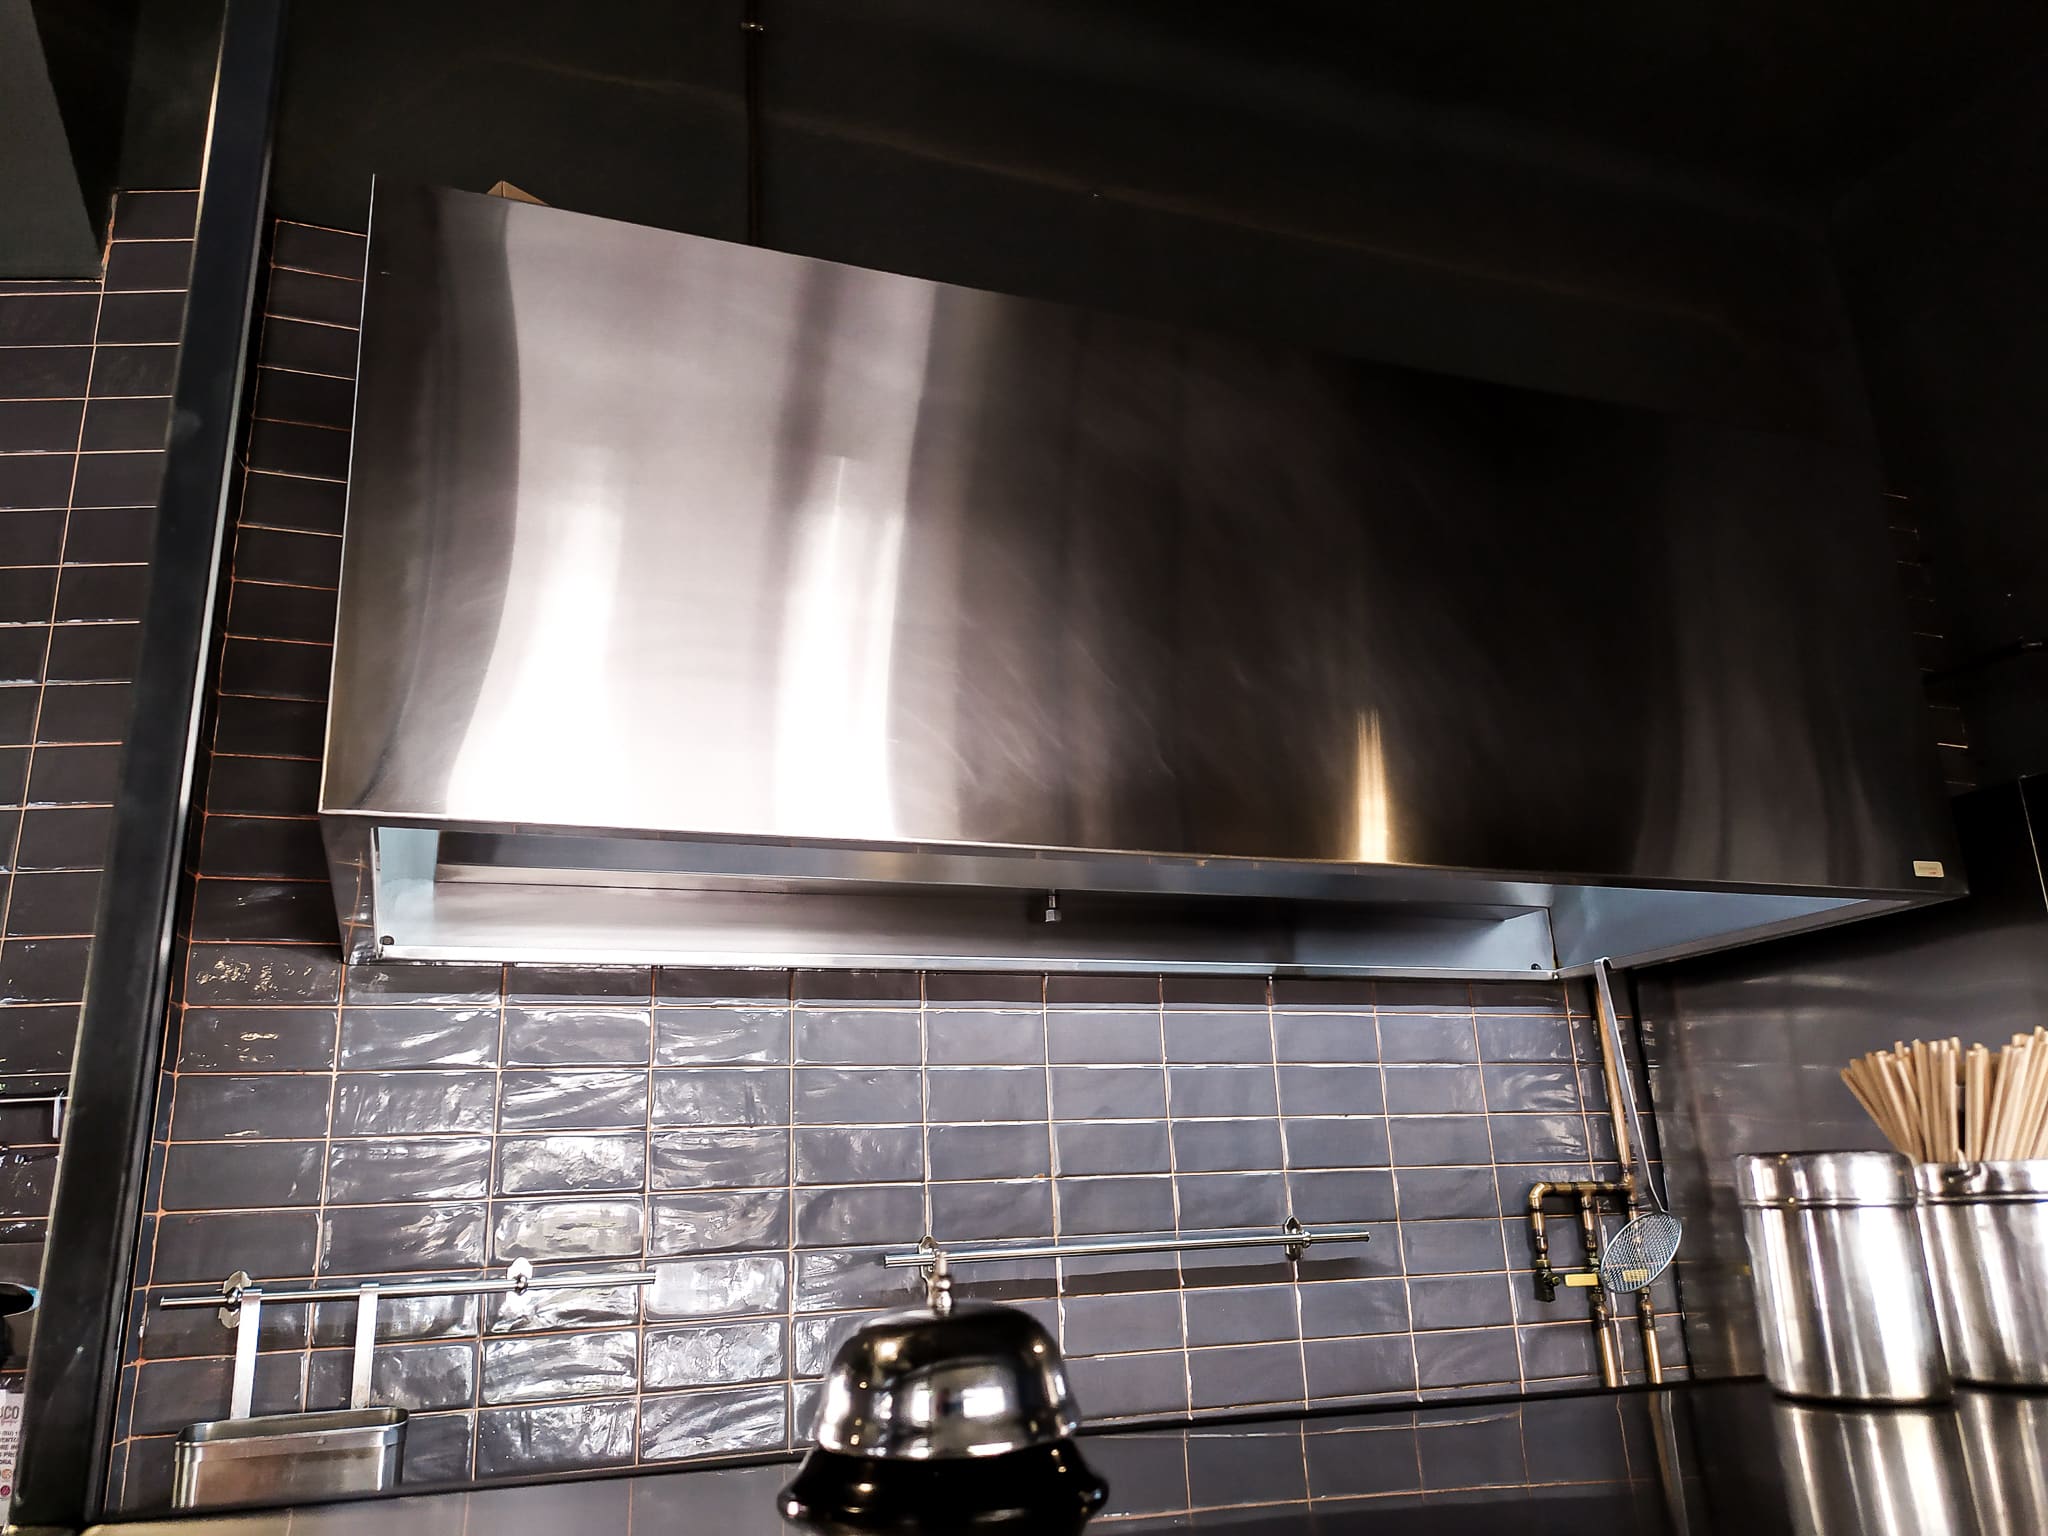 4 campanas extractoras modernas que desinfectan el aire de la cocina -  Frigicoll - Blog